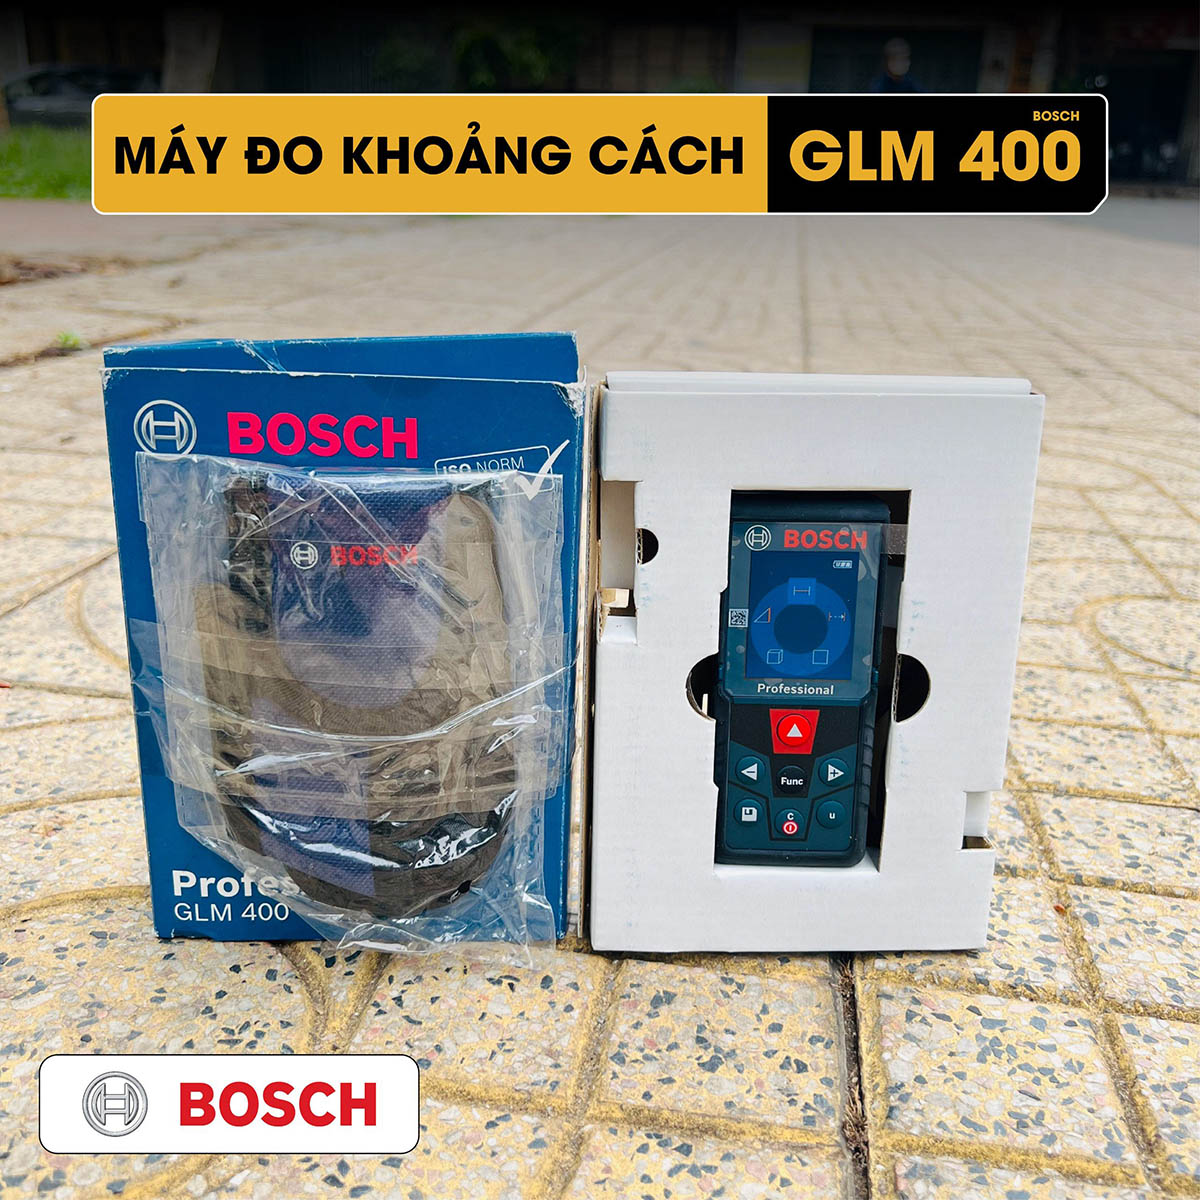 Review thước đo khoảng cách Bosch GLM 400 đa dụng 8 chức năng